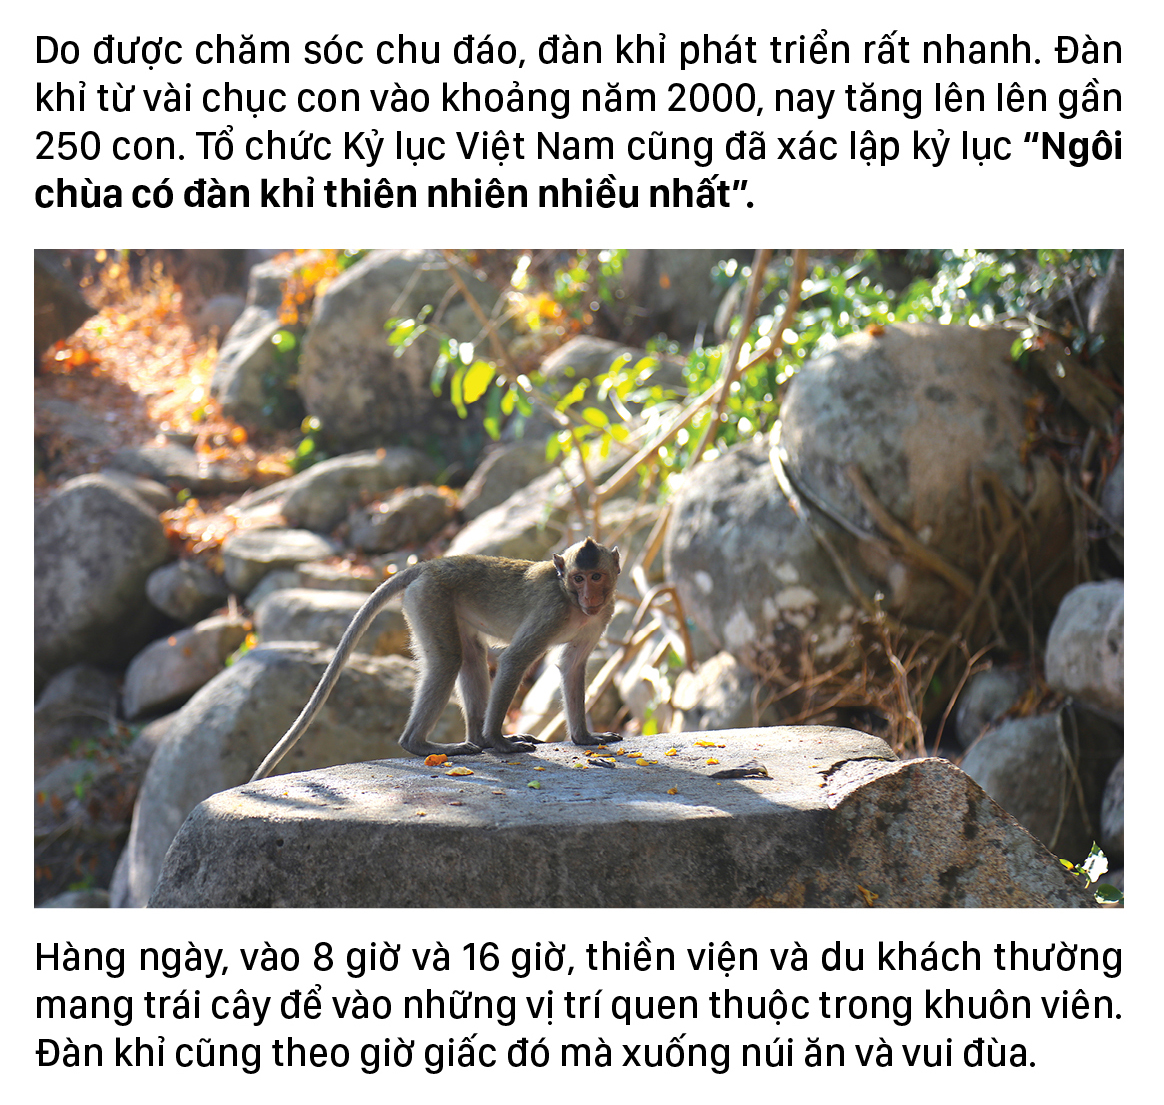 Đàn khỉ sống thân thiện với con người dưới chân núi Kỳ Vân ảnh 6